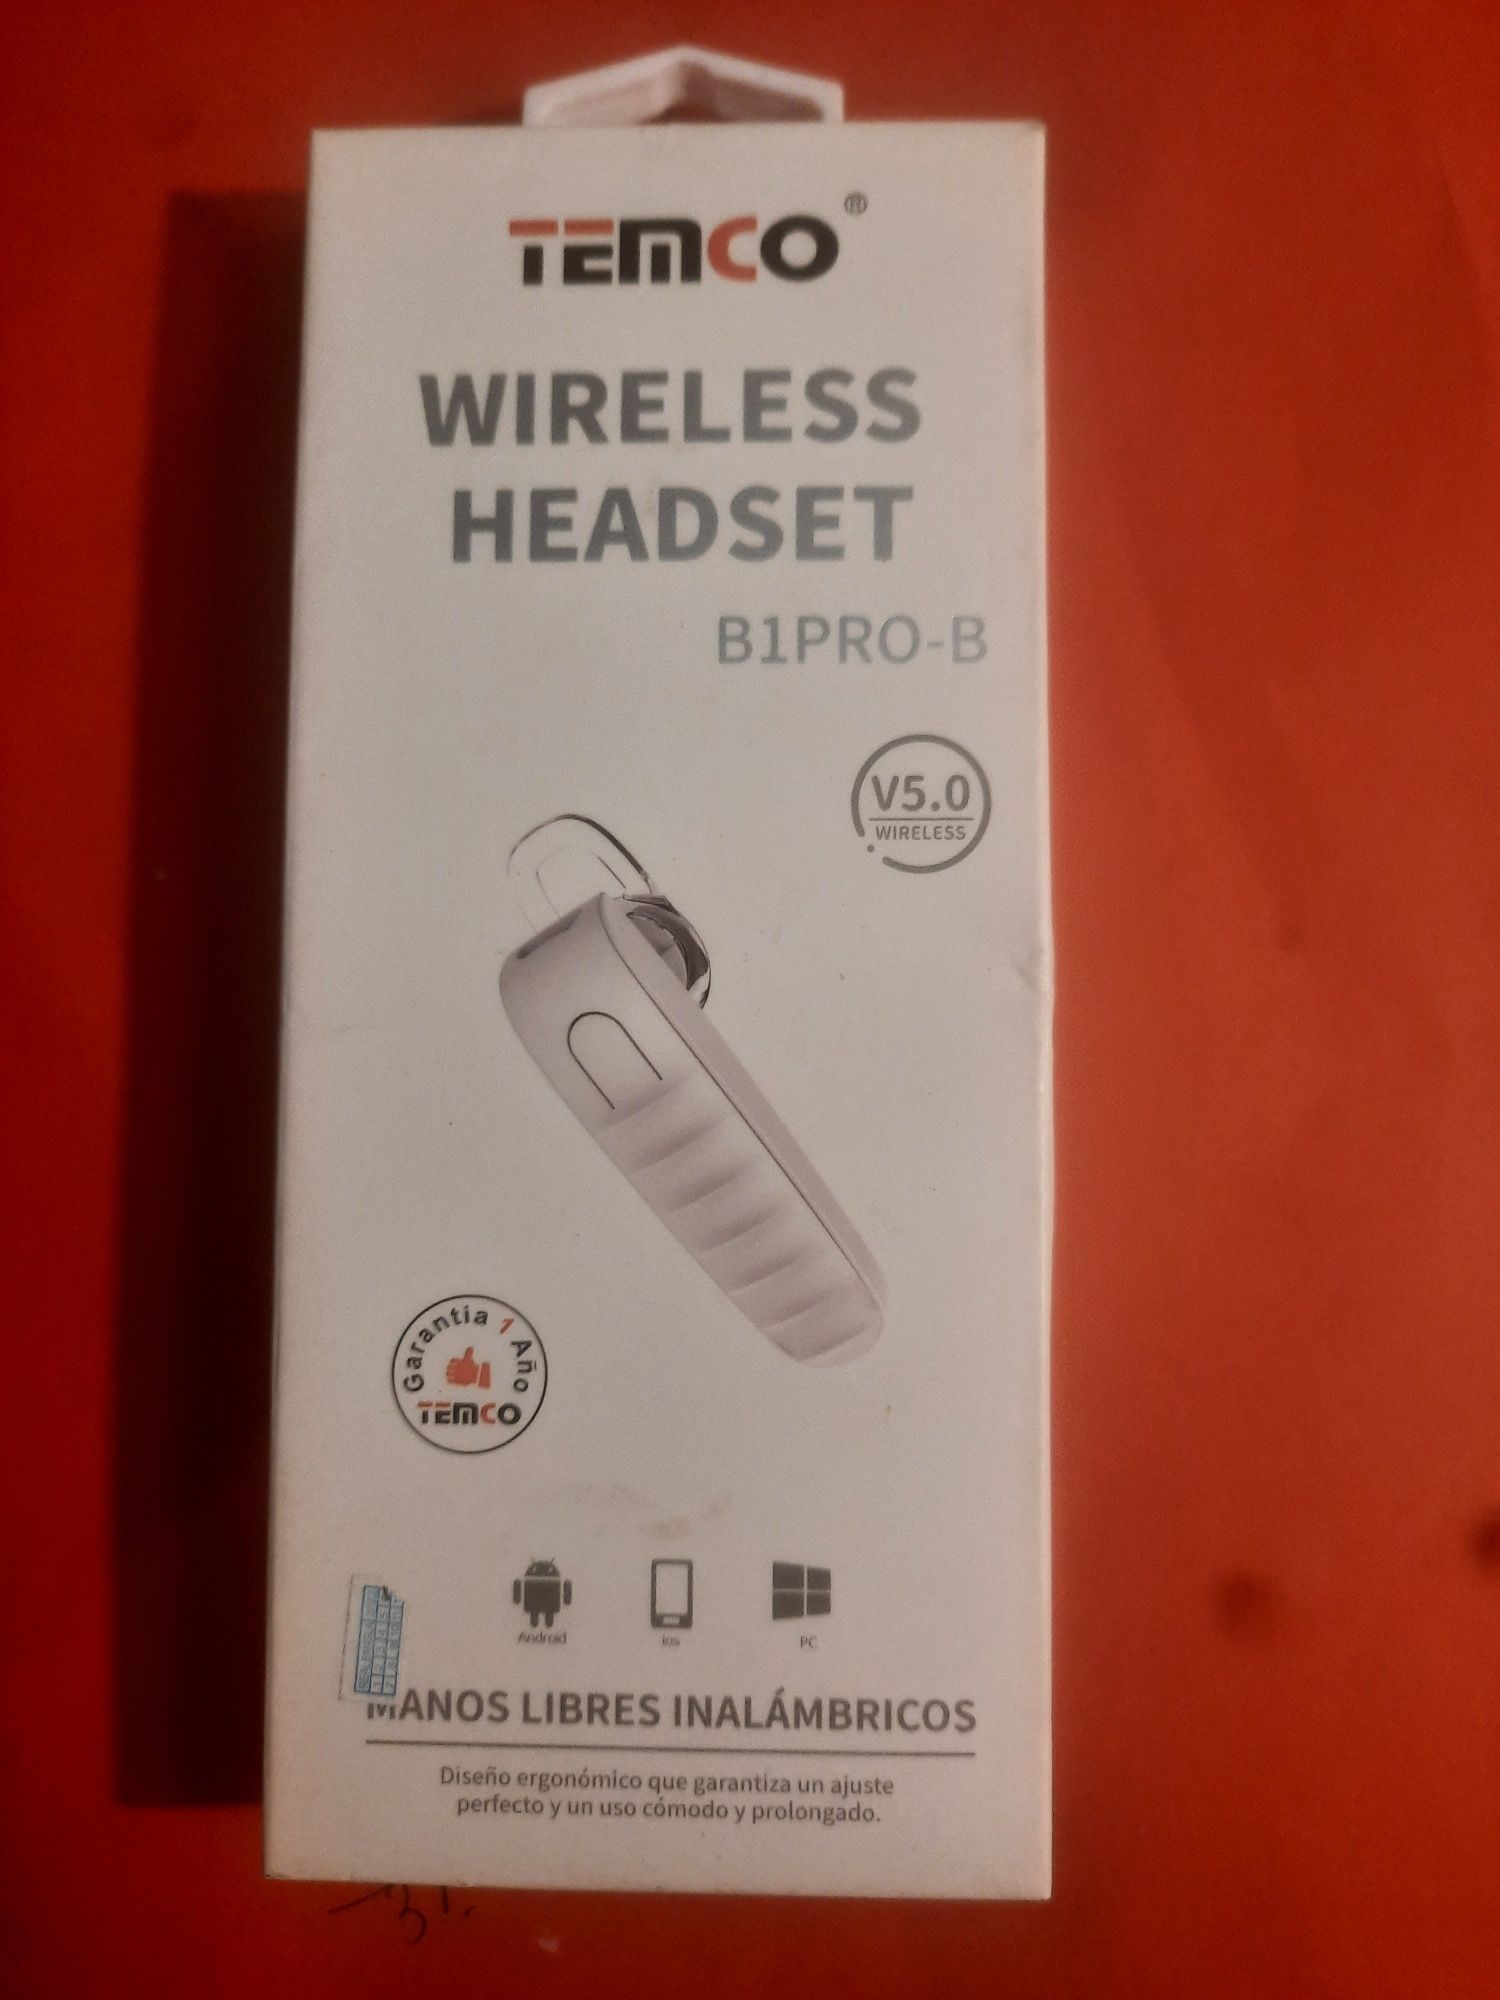 Wireless headset B1PRO-B